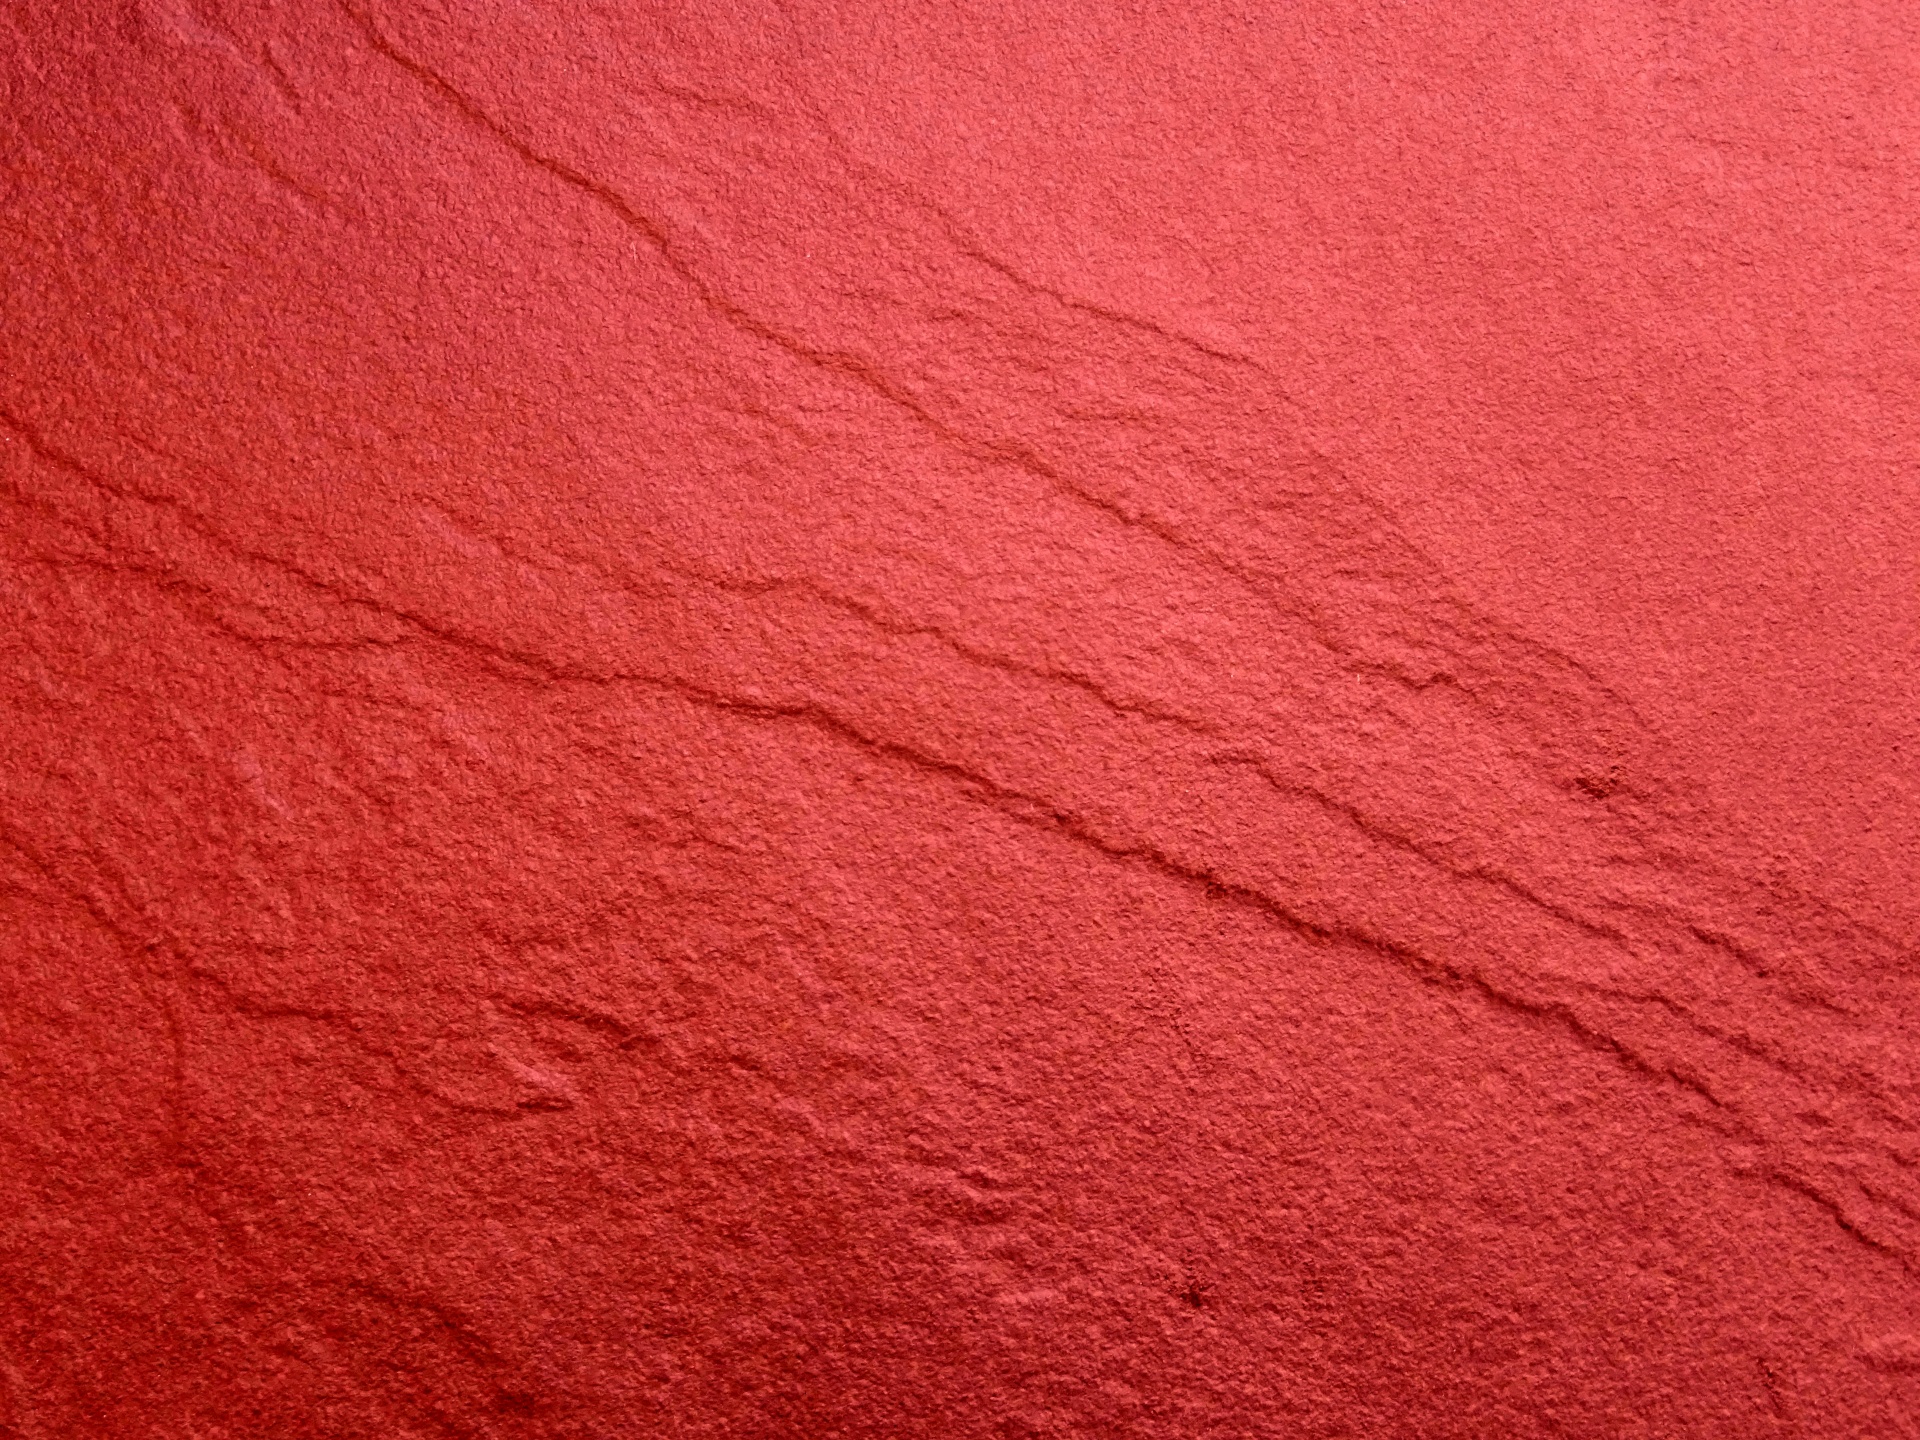 Với màu sắc đỏ đặc trưng, đá đỏ mang đến sự bí ẩn và quyến rũ. Sử dụng hình ảnh đá đỏ làm hình nền cho màn hình của bạn để tạo ra một không gian nghỉ ngơi và thư giãn. Với những phong cách trang trí đa dạng, bạn sẽ tìm thấy một hình ảnh đá đỏ phù hợp với phong cách của riêng bạn.